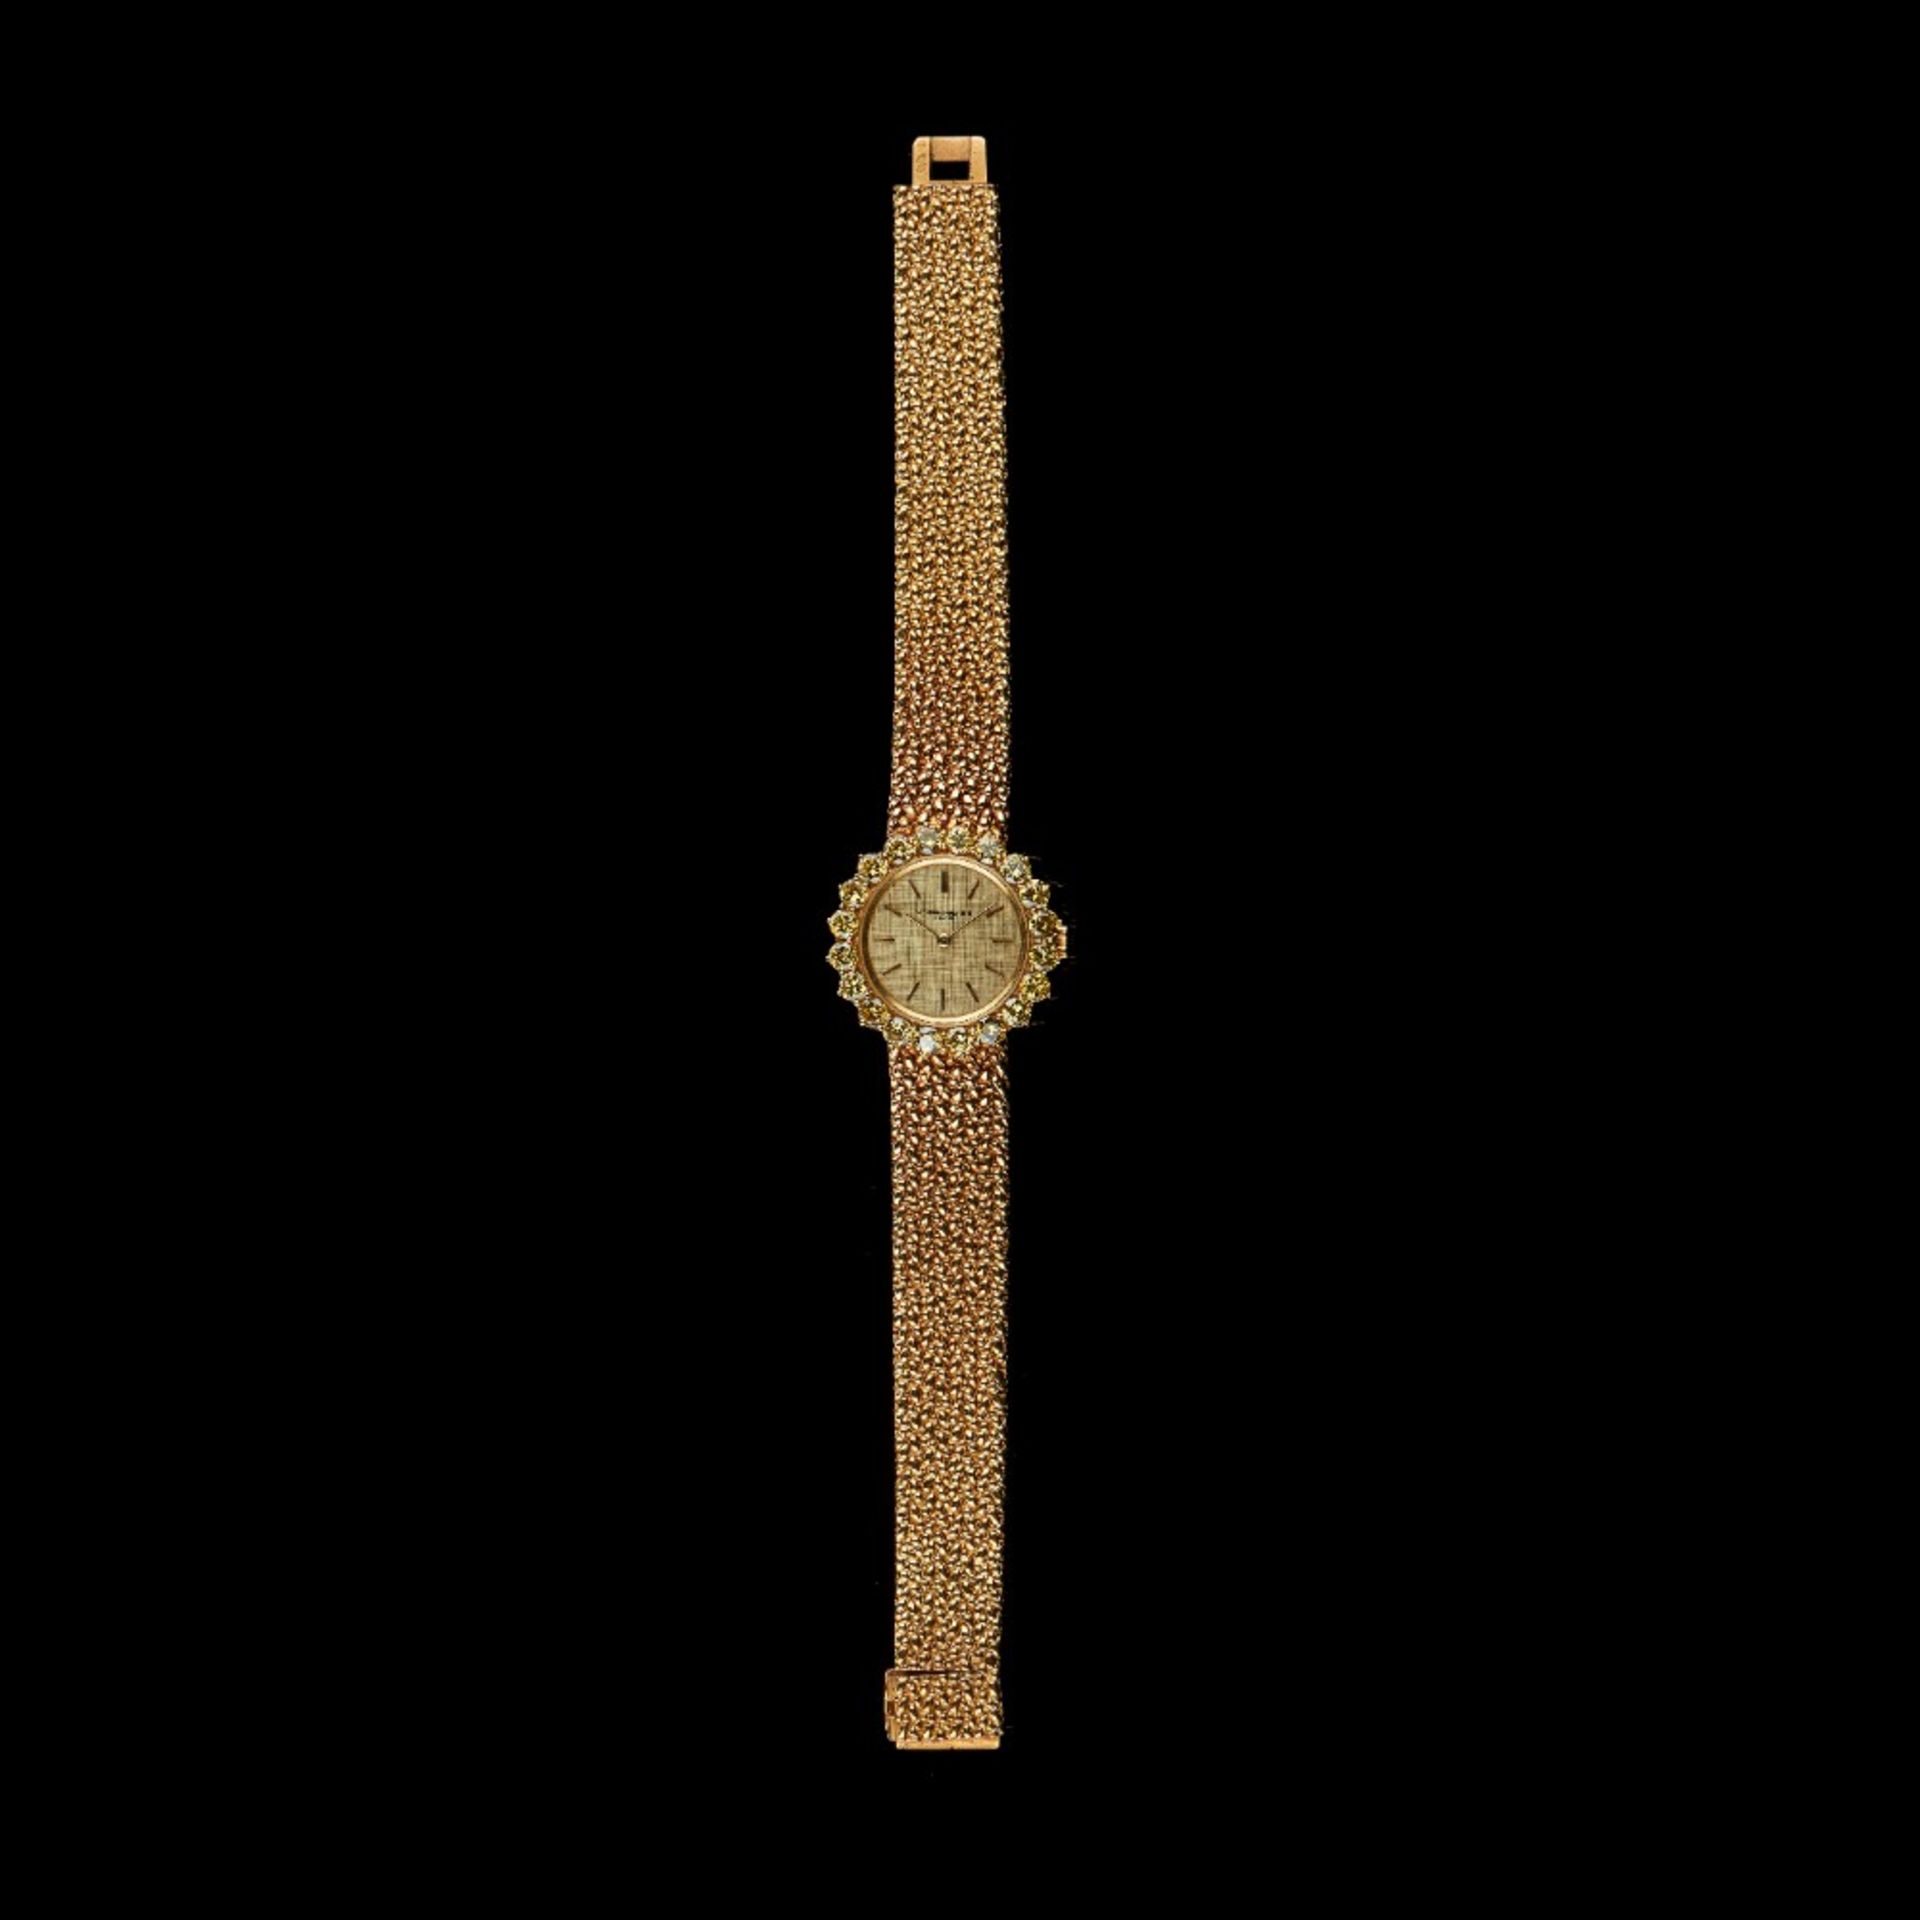  A VACHERON & CONSTANTIN wristwatch